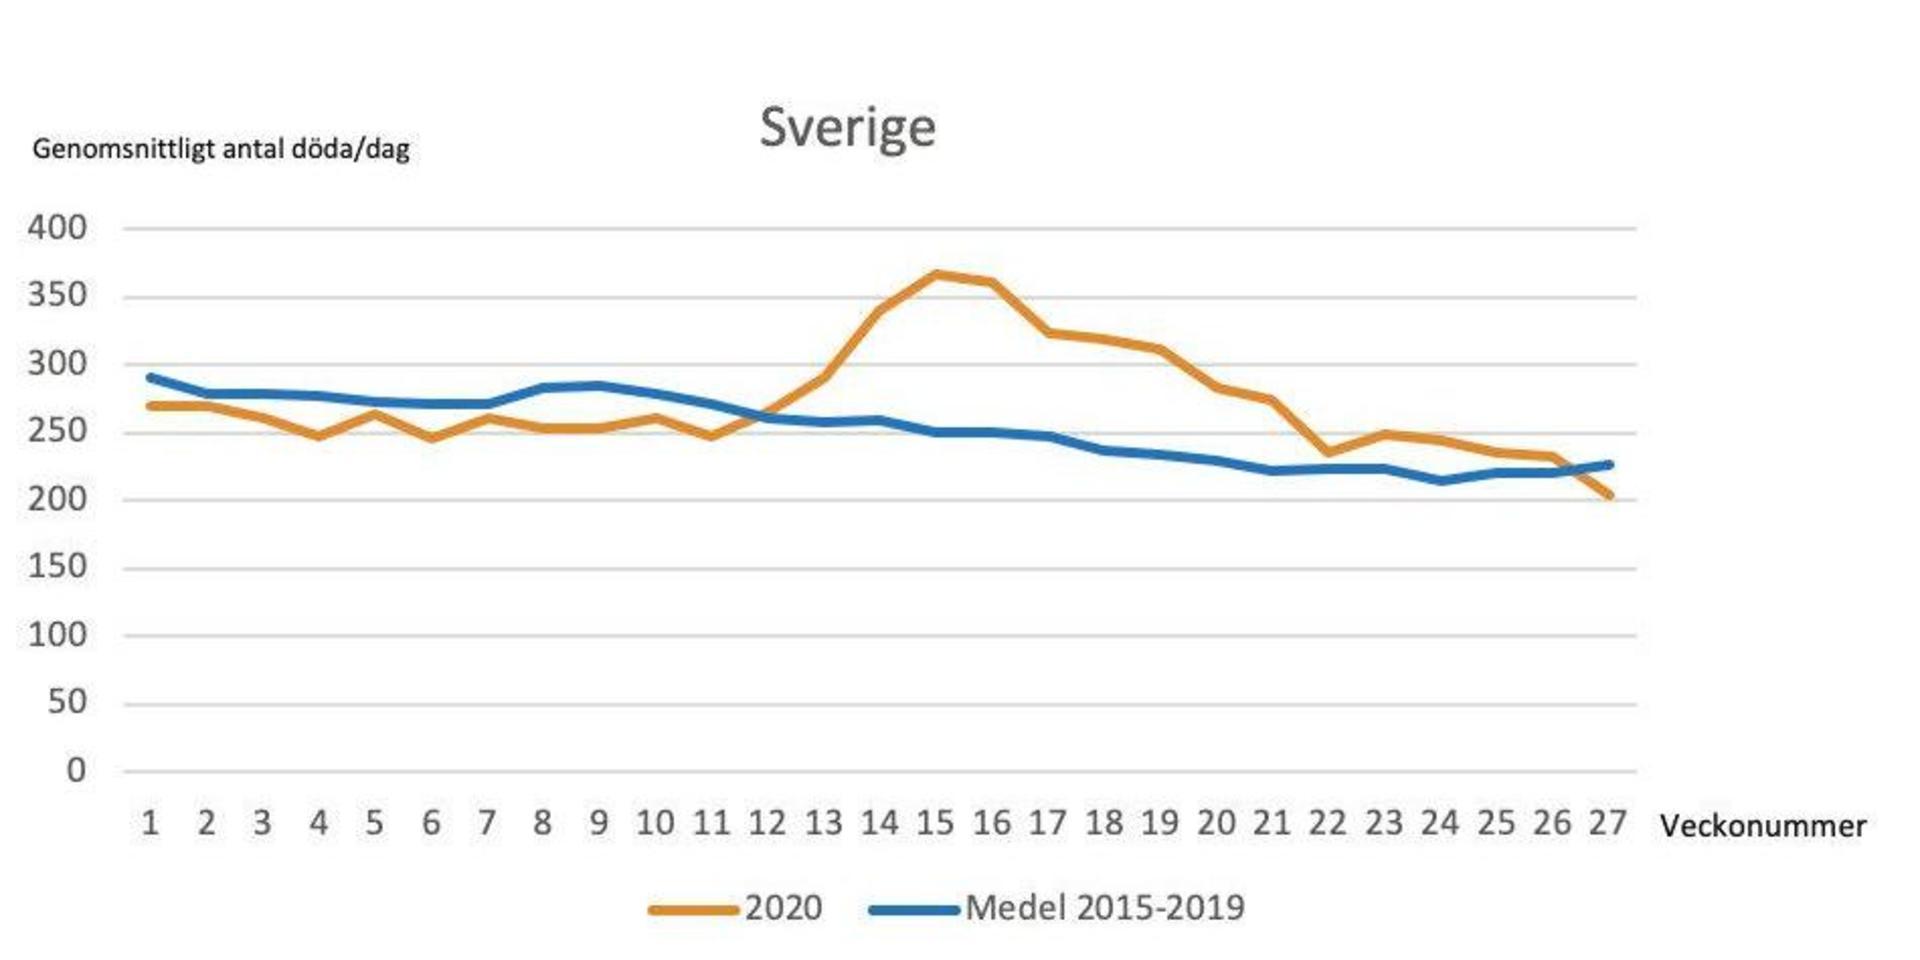 I Sverige som helhet märks en ökad dödlighet under coronapandemins topp, vilket framför allt speglar utvecklingen i Stockholm och Sörmland. Erfarenheten från tidigare infuensaepidemier är att dessa brukar följas av några månader med betydligt lägre dödstal än normalt. Det återstår att se om detta även kommer att gälla coronapandemin. Den oreanga linjen visar genomsnittligt antal döda per dag under 2020 och den blå motsvarande snitt under åren 2015-2019. Den vågräta axeln visar veckonummer.